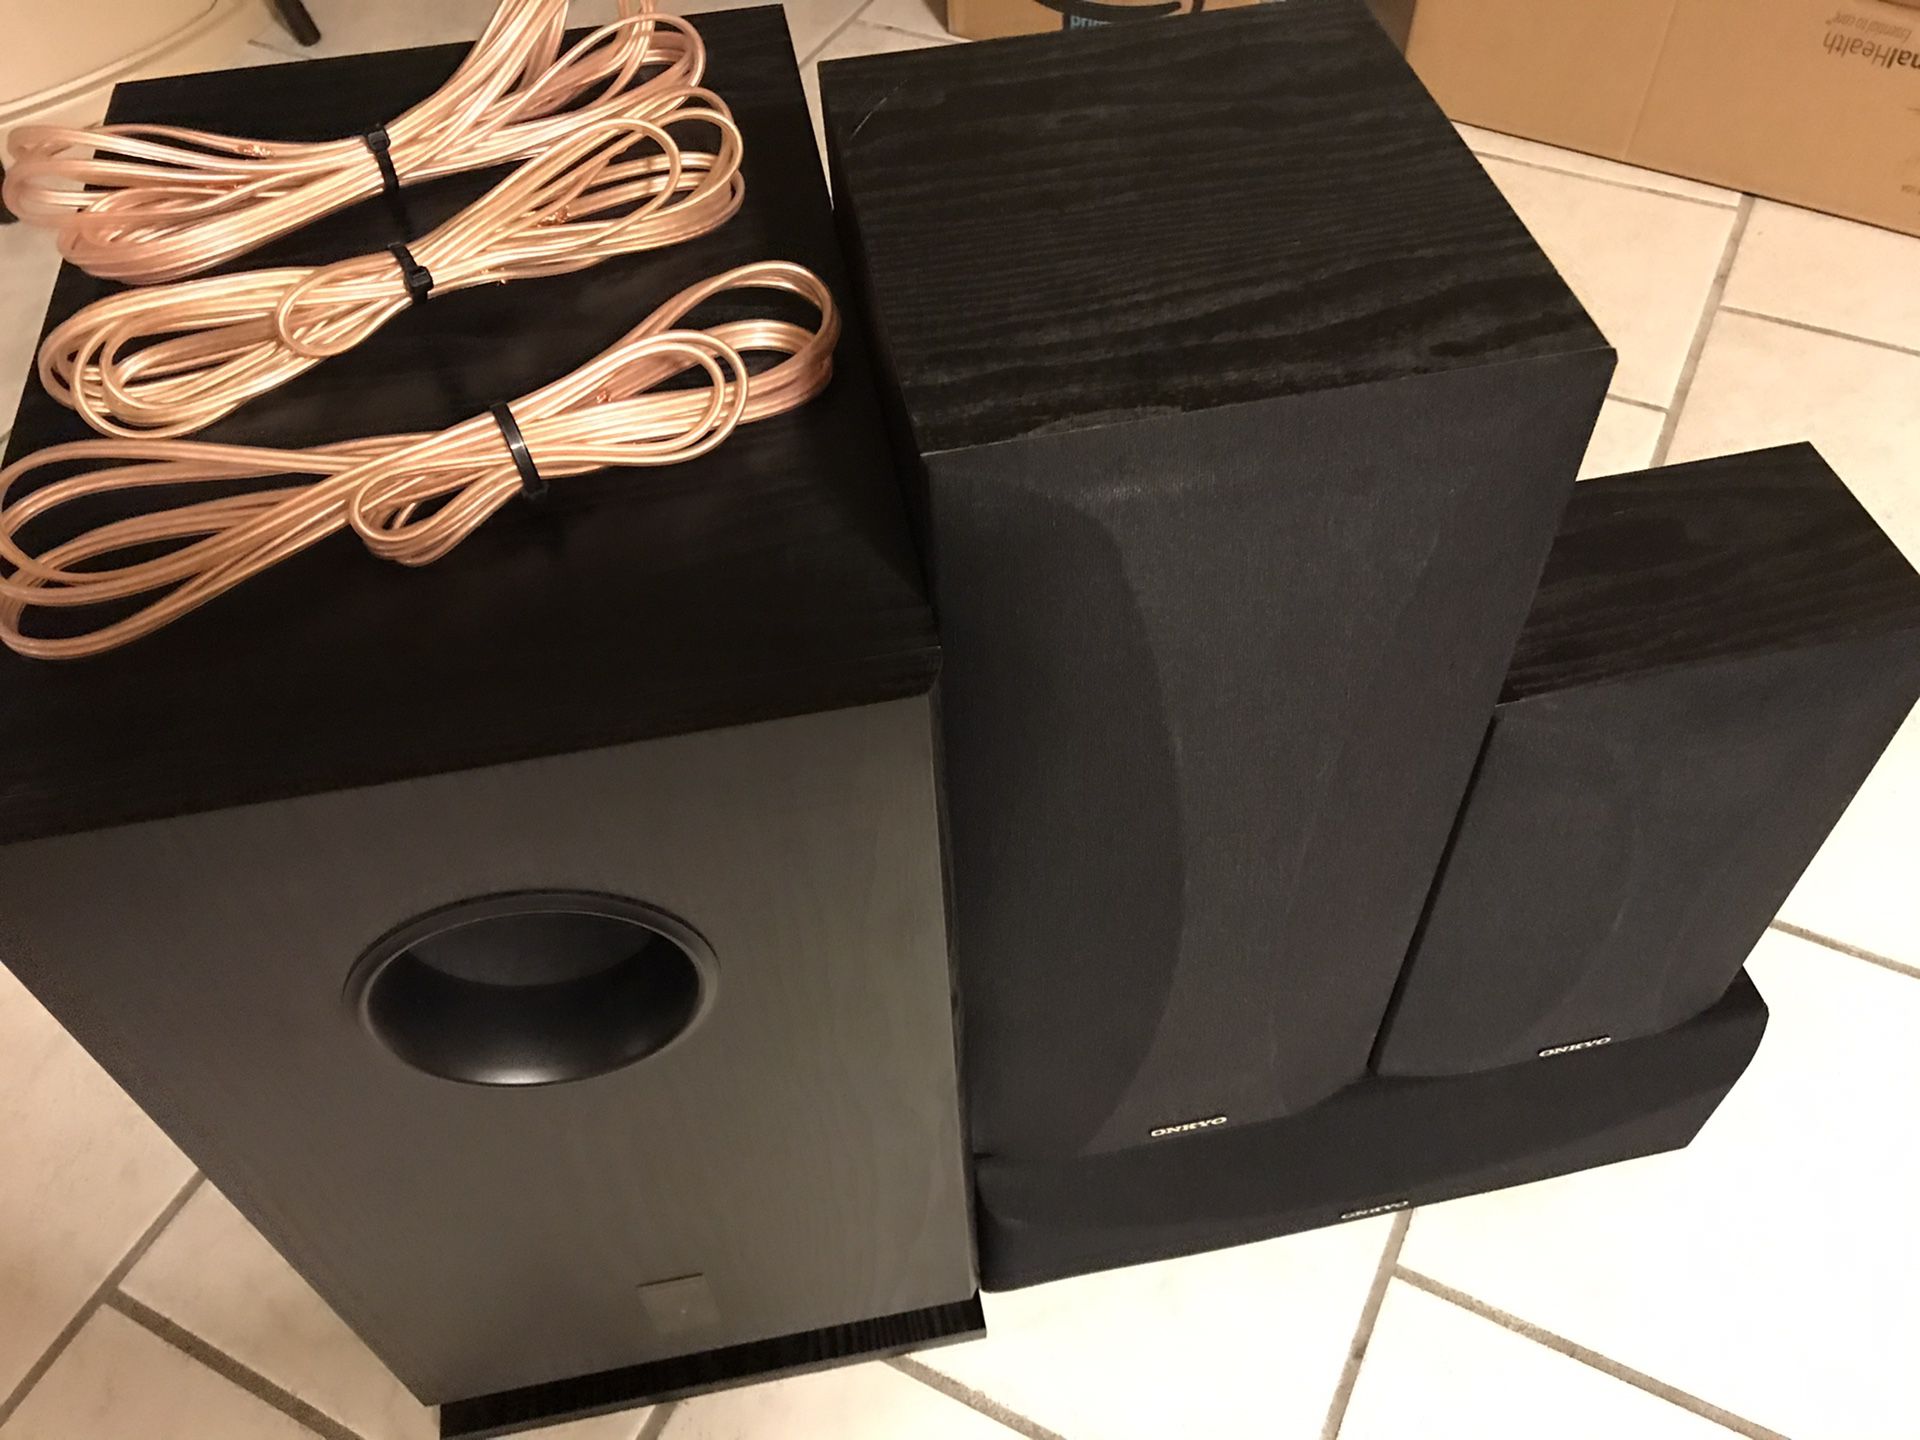 Onkyo Speakers & Subwoofer w/ speaker wire